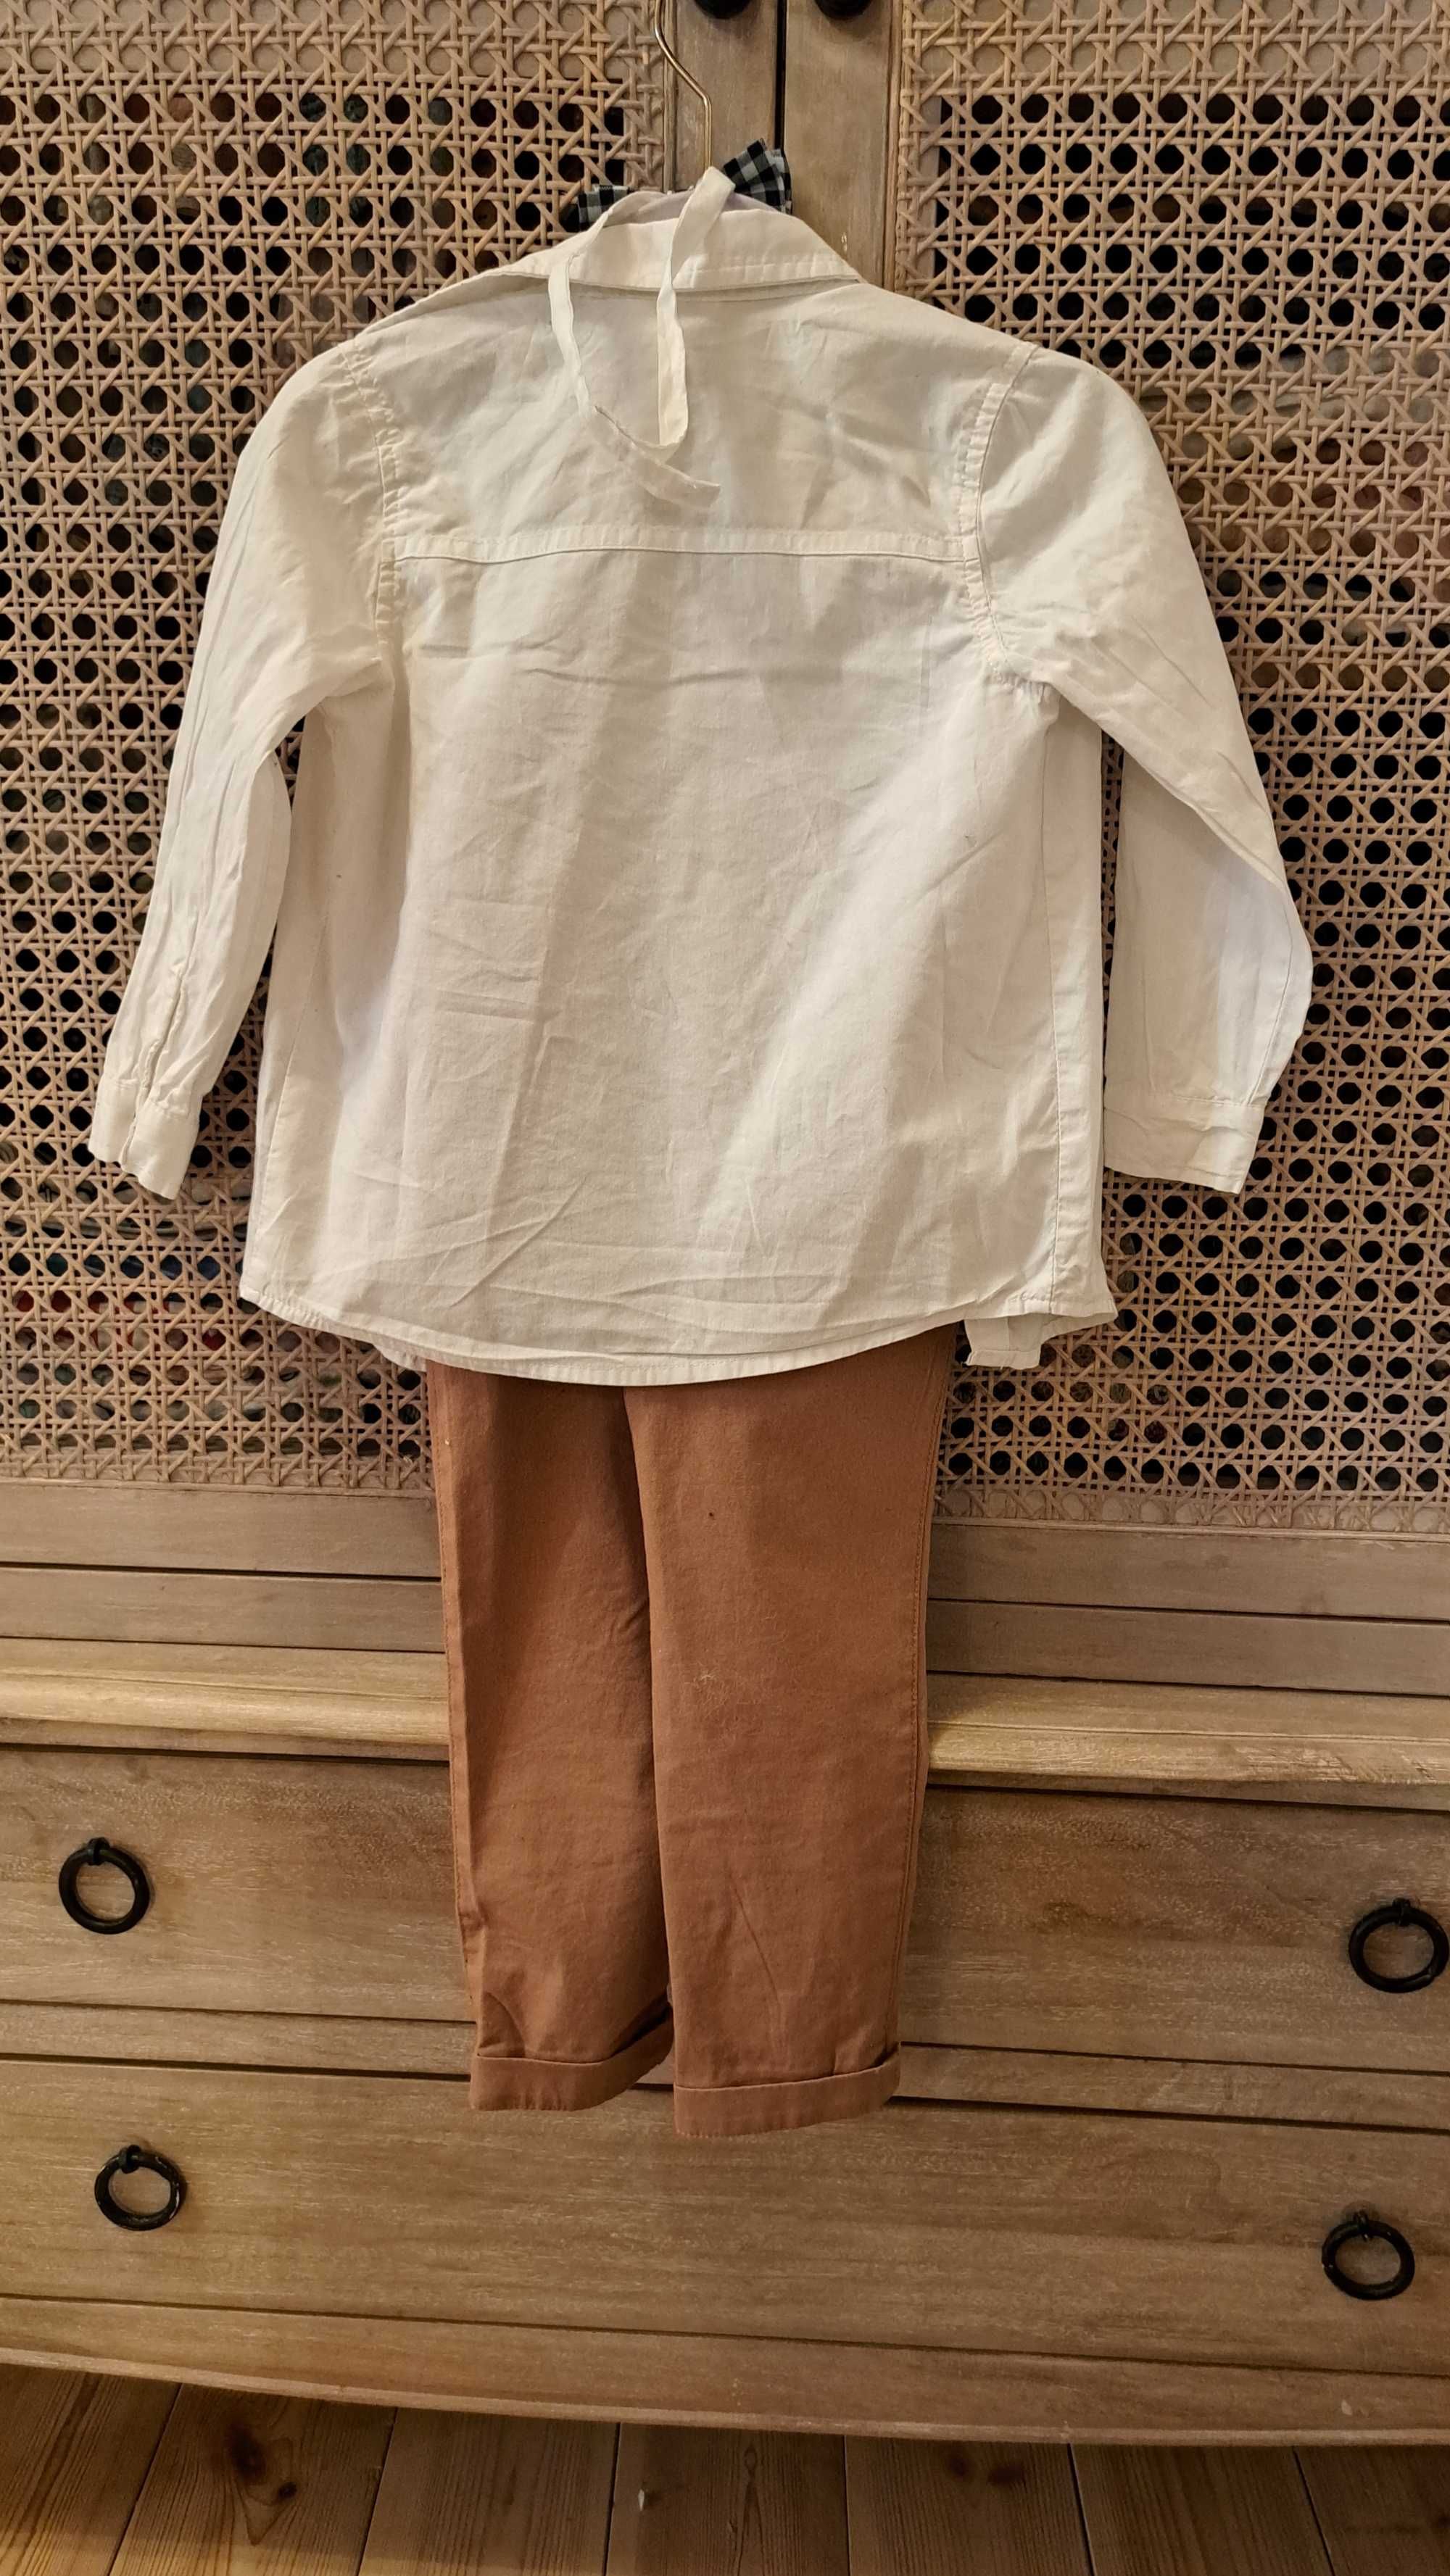 98 2-3 lata koszula spodnie mucha elegancki komplet dla chlopca